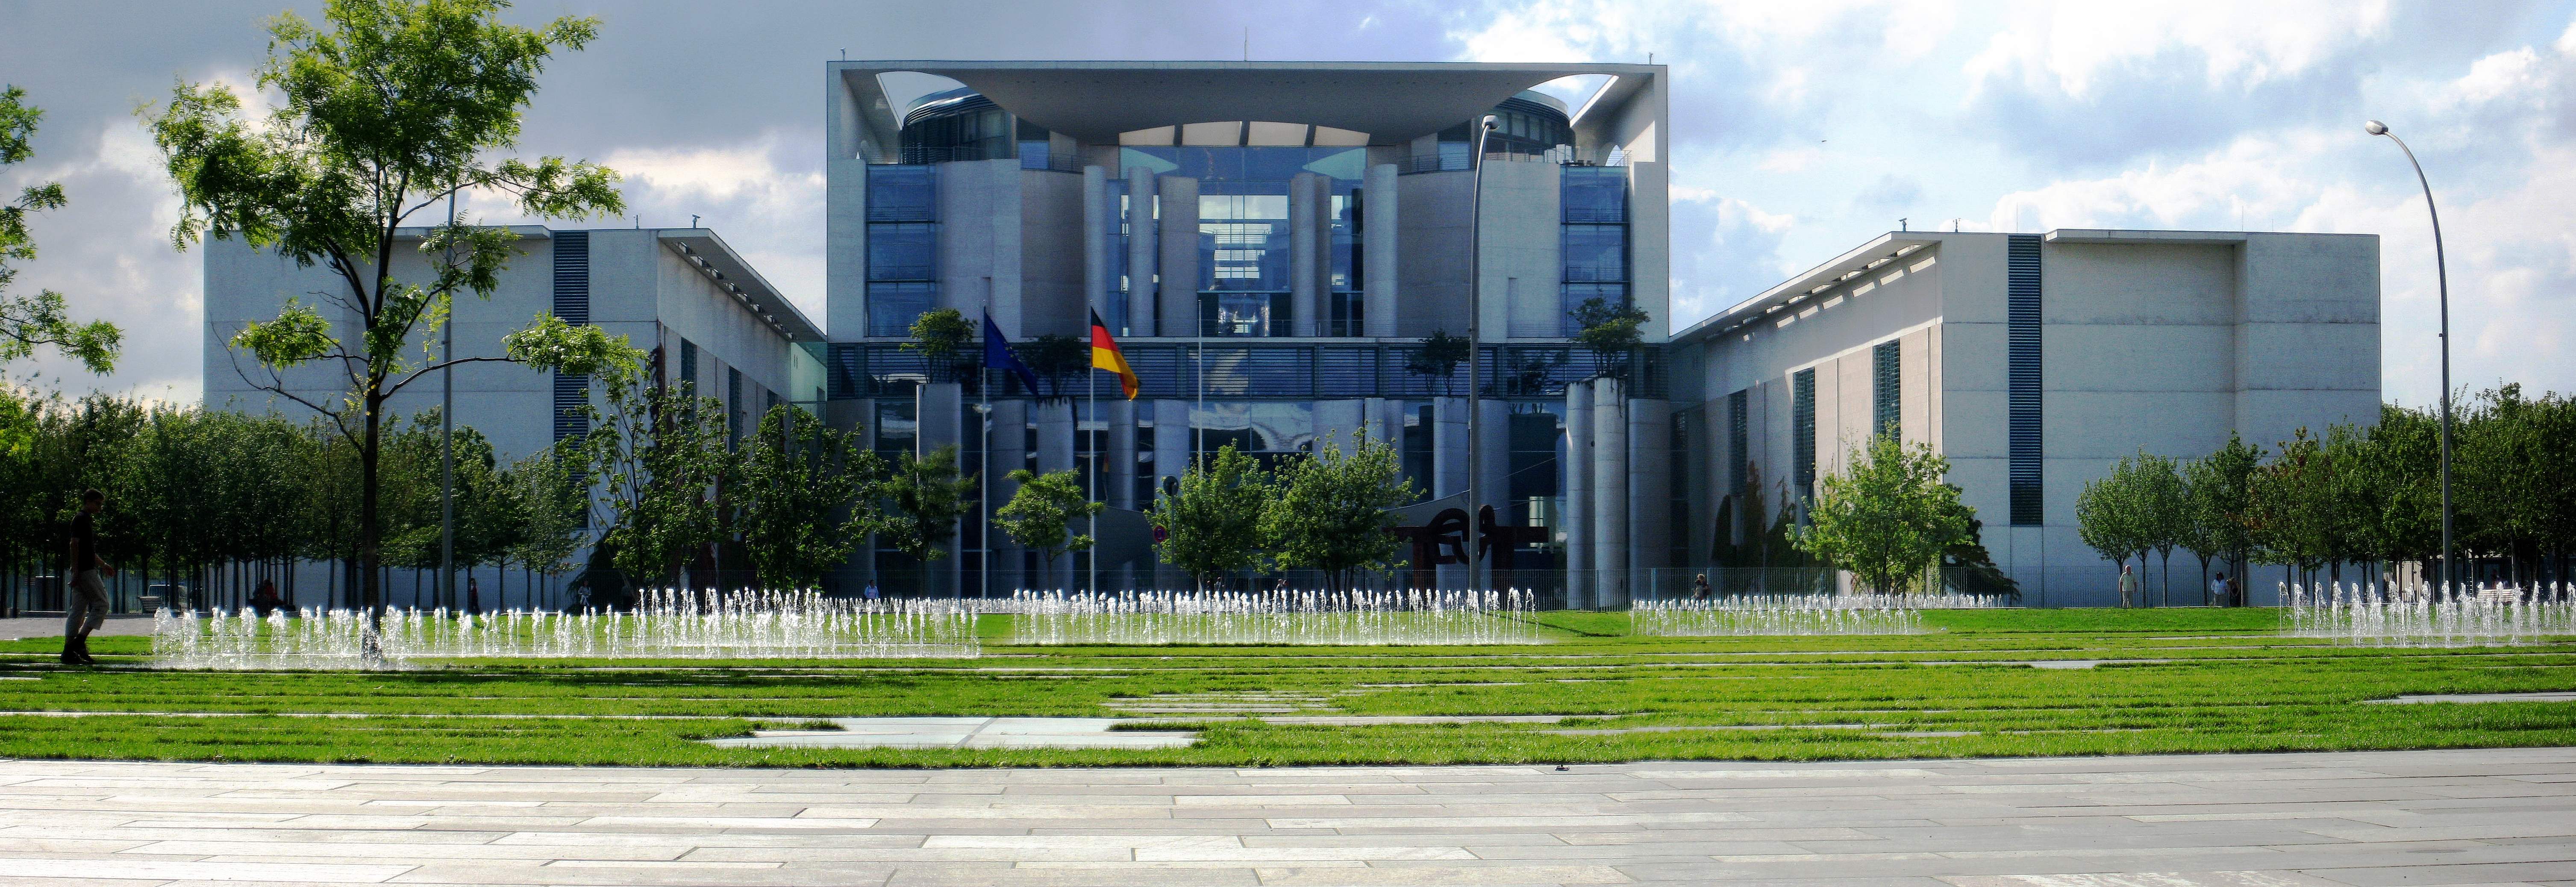 دفتر صدر اعظم آلمان